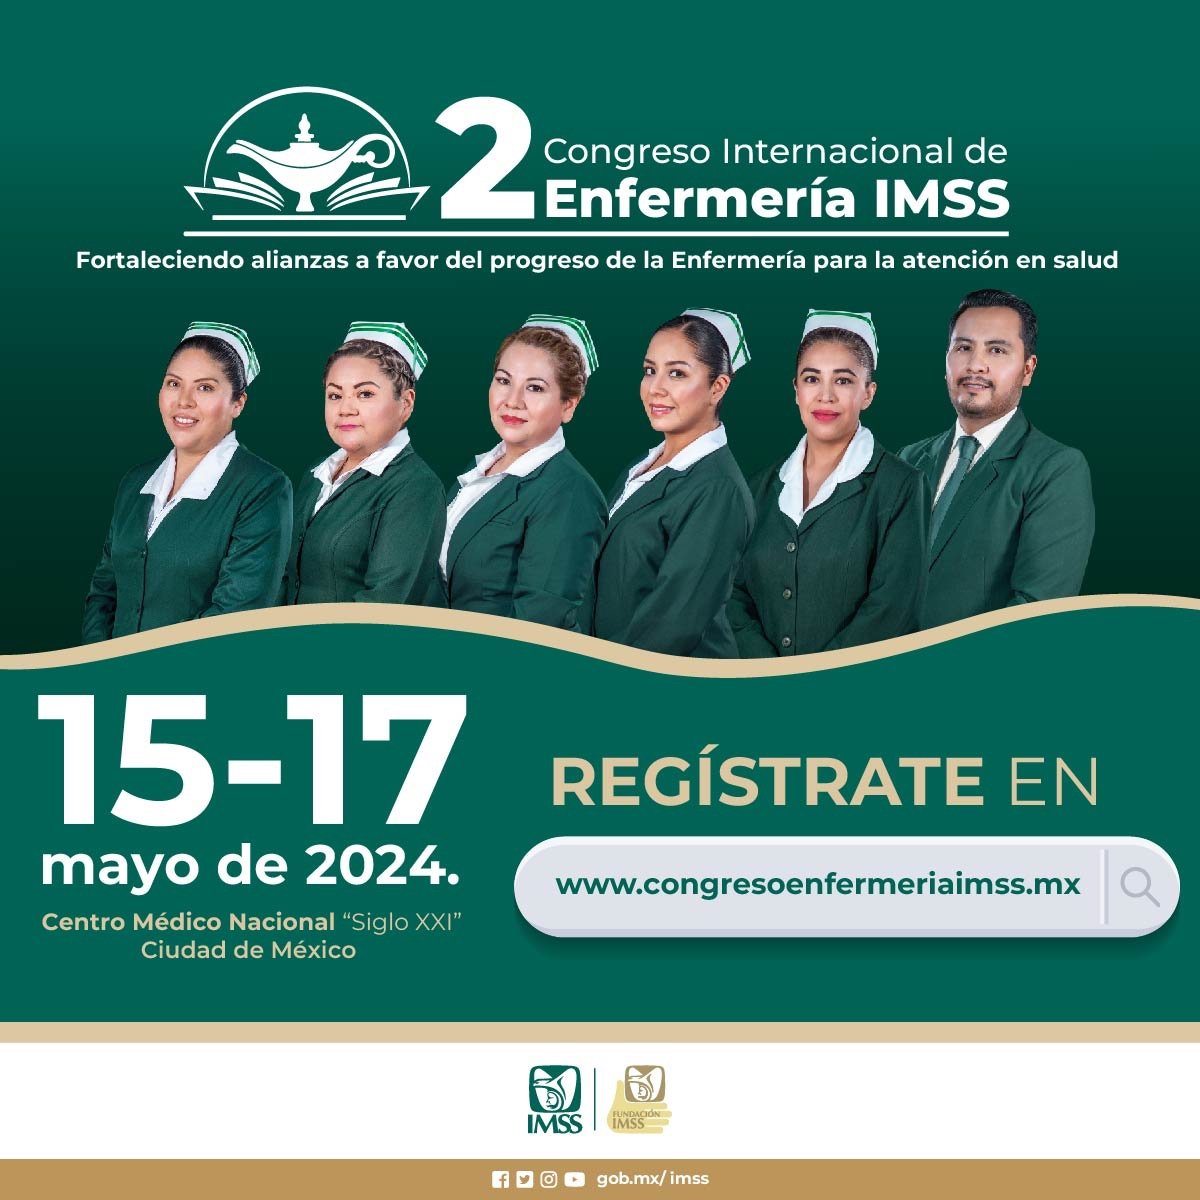 2do Congreso Internacional de Enfermería IMSS. #2doCongresoEnfermeríaIMSS Regístrate en congresoenfermeriaimss.mx